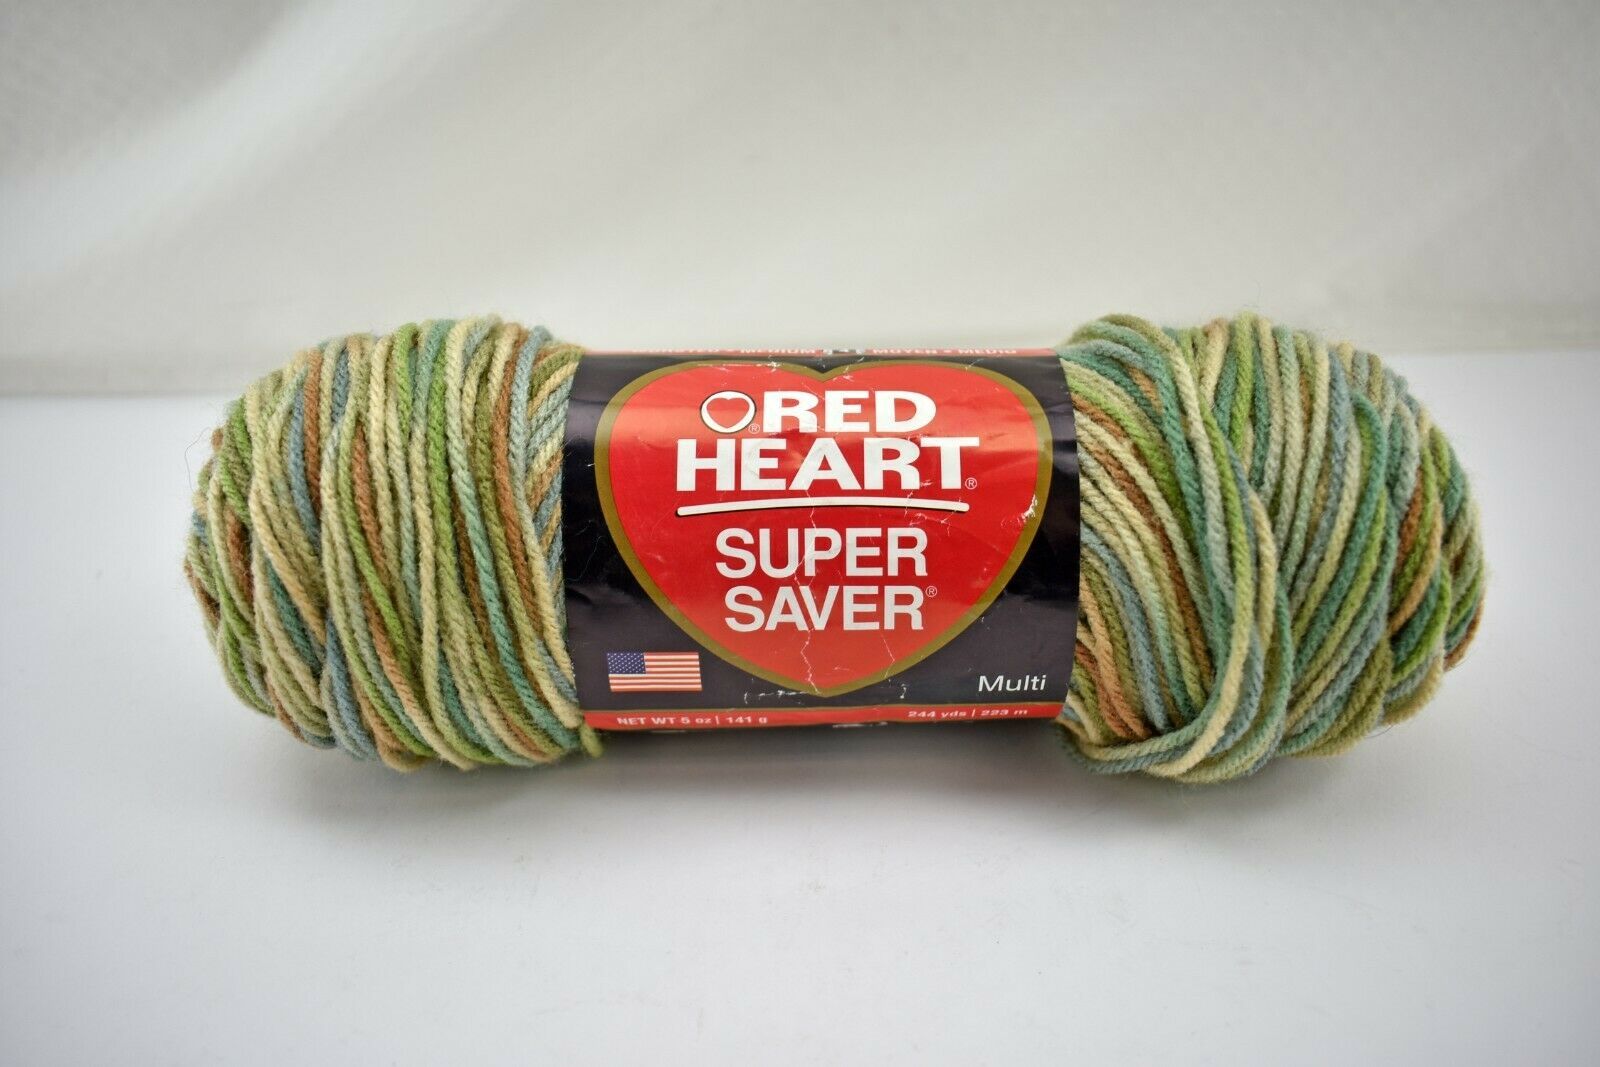 Red Heart Super Saver Yarn, White 0311, Medium 4 - 1 skein, 7 oz